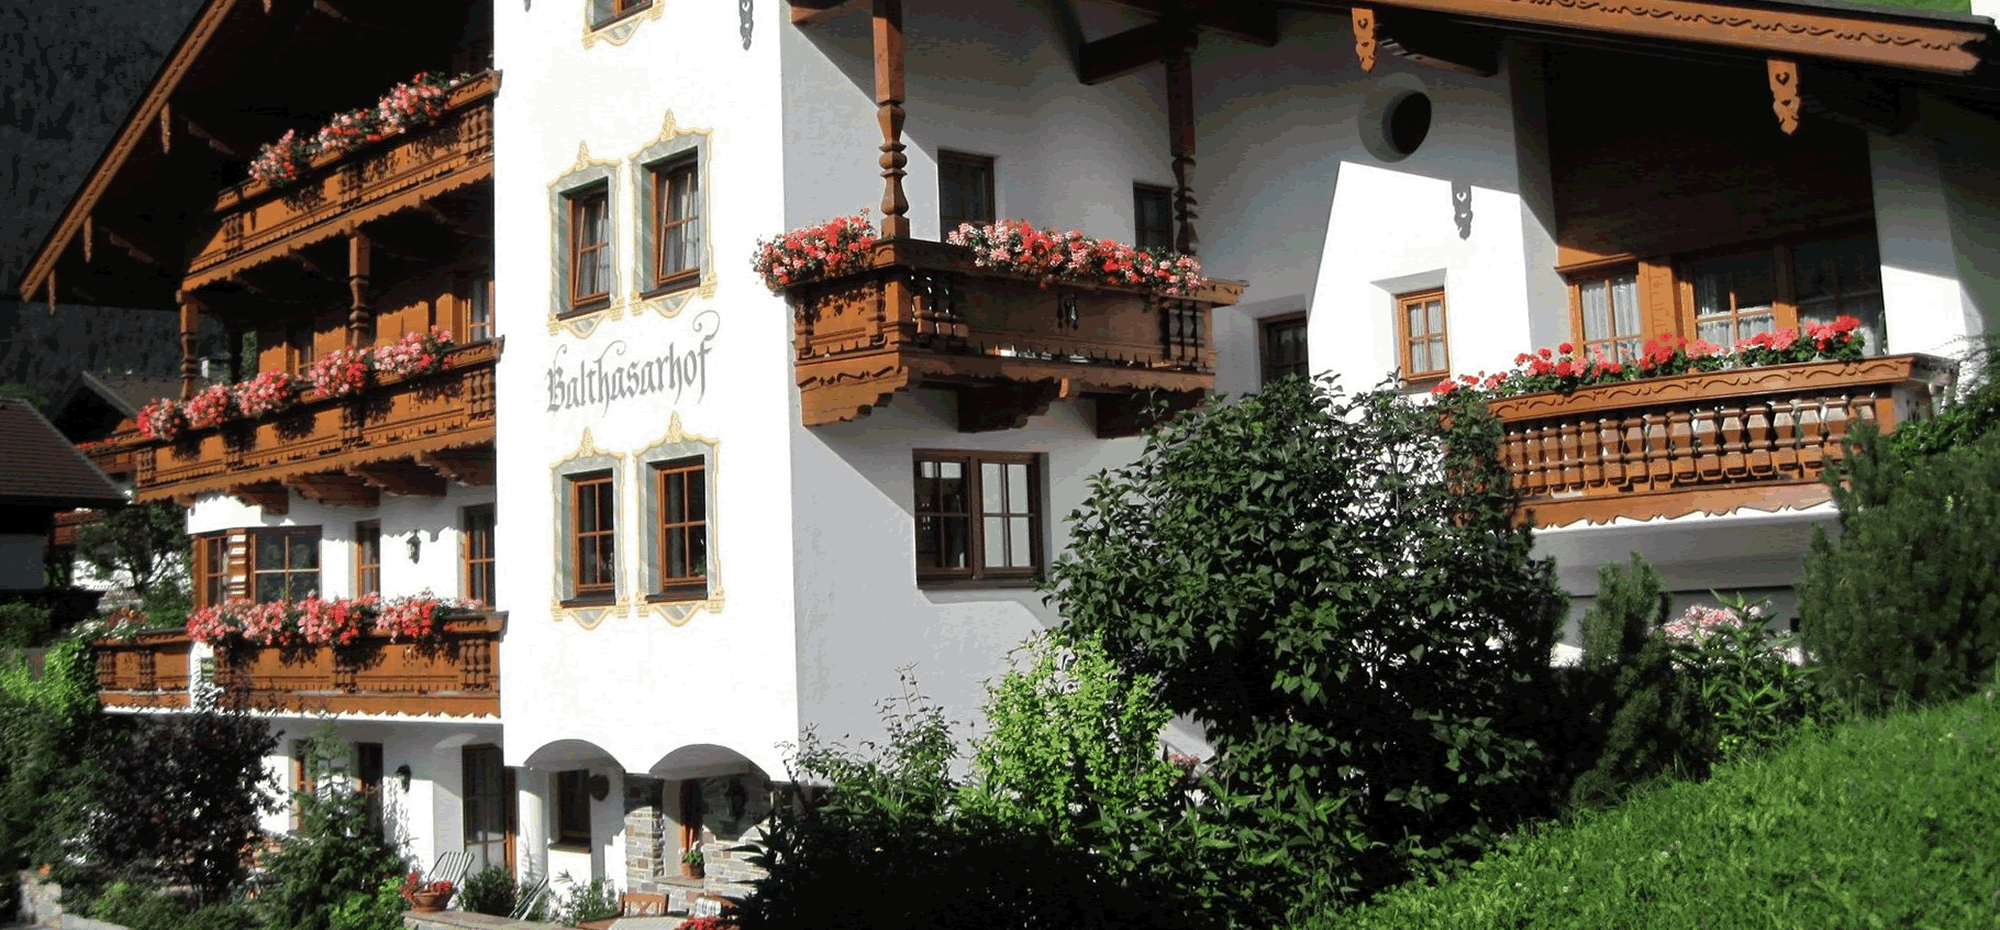 Balthasarhof